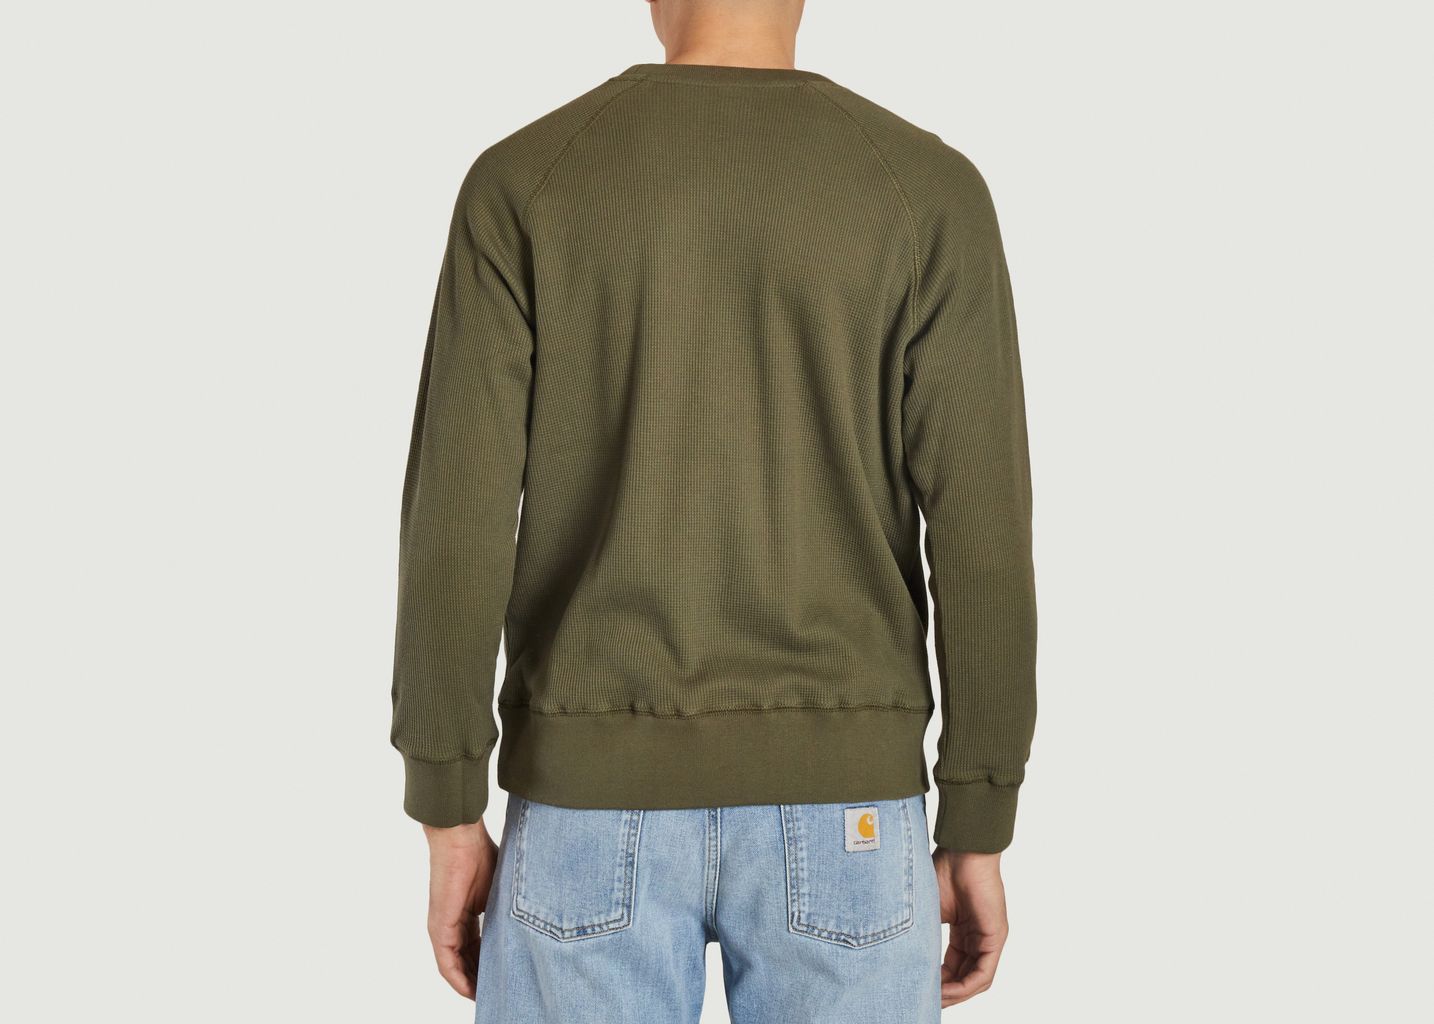 Jersey Sweatshirt - M.C. Overalls